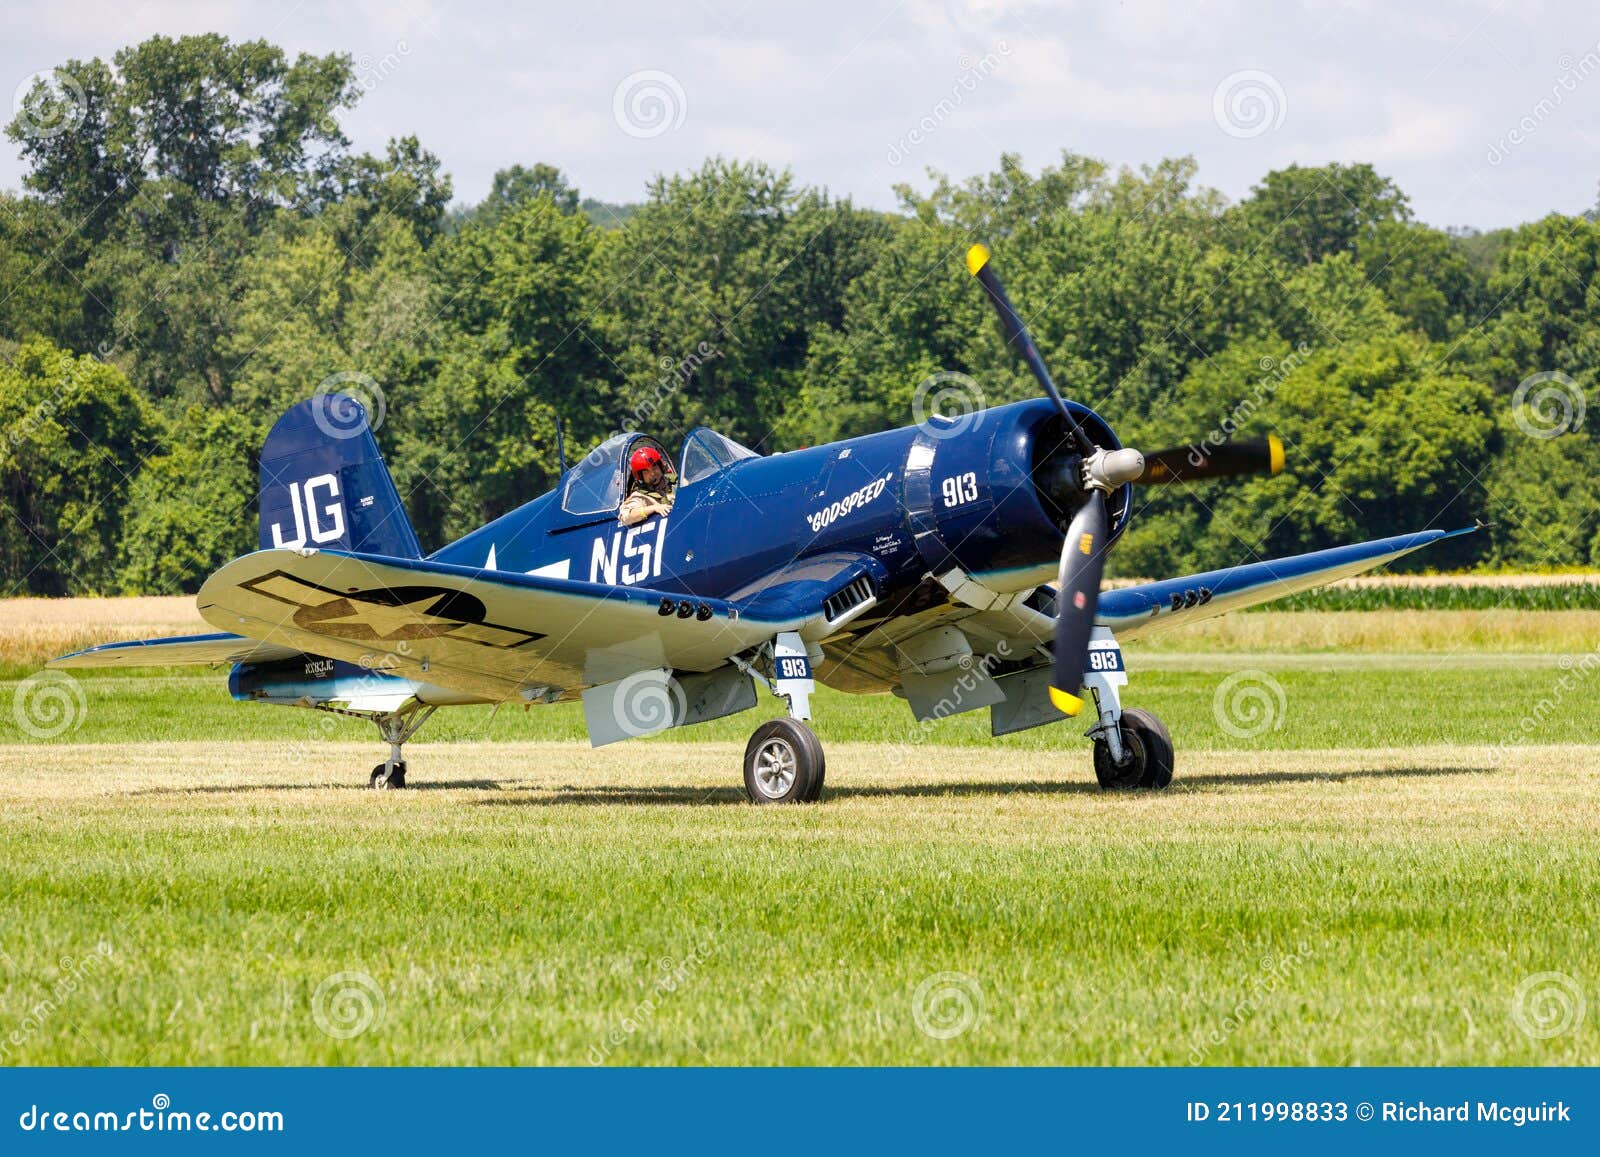 vought-f-u-corsair-taxing-green-grass-runway-genneseo-new-york-united-states-july-blue-vought-f-u-corsair-world-war-ii-211998833.jpg